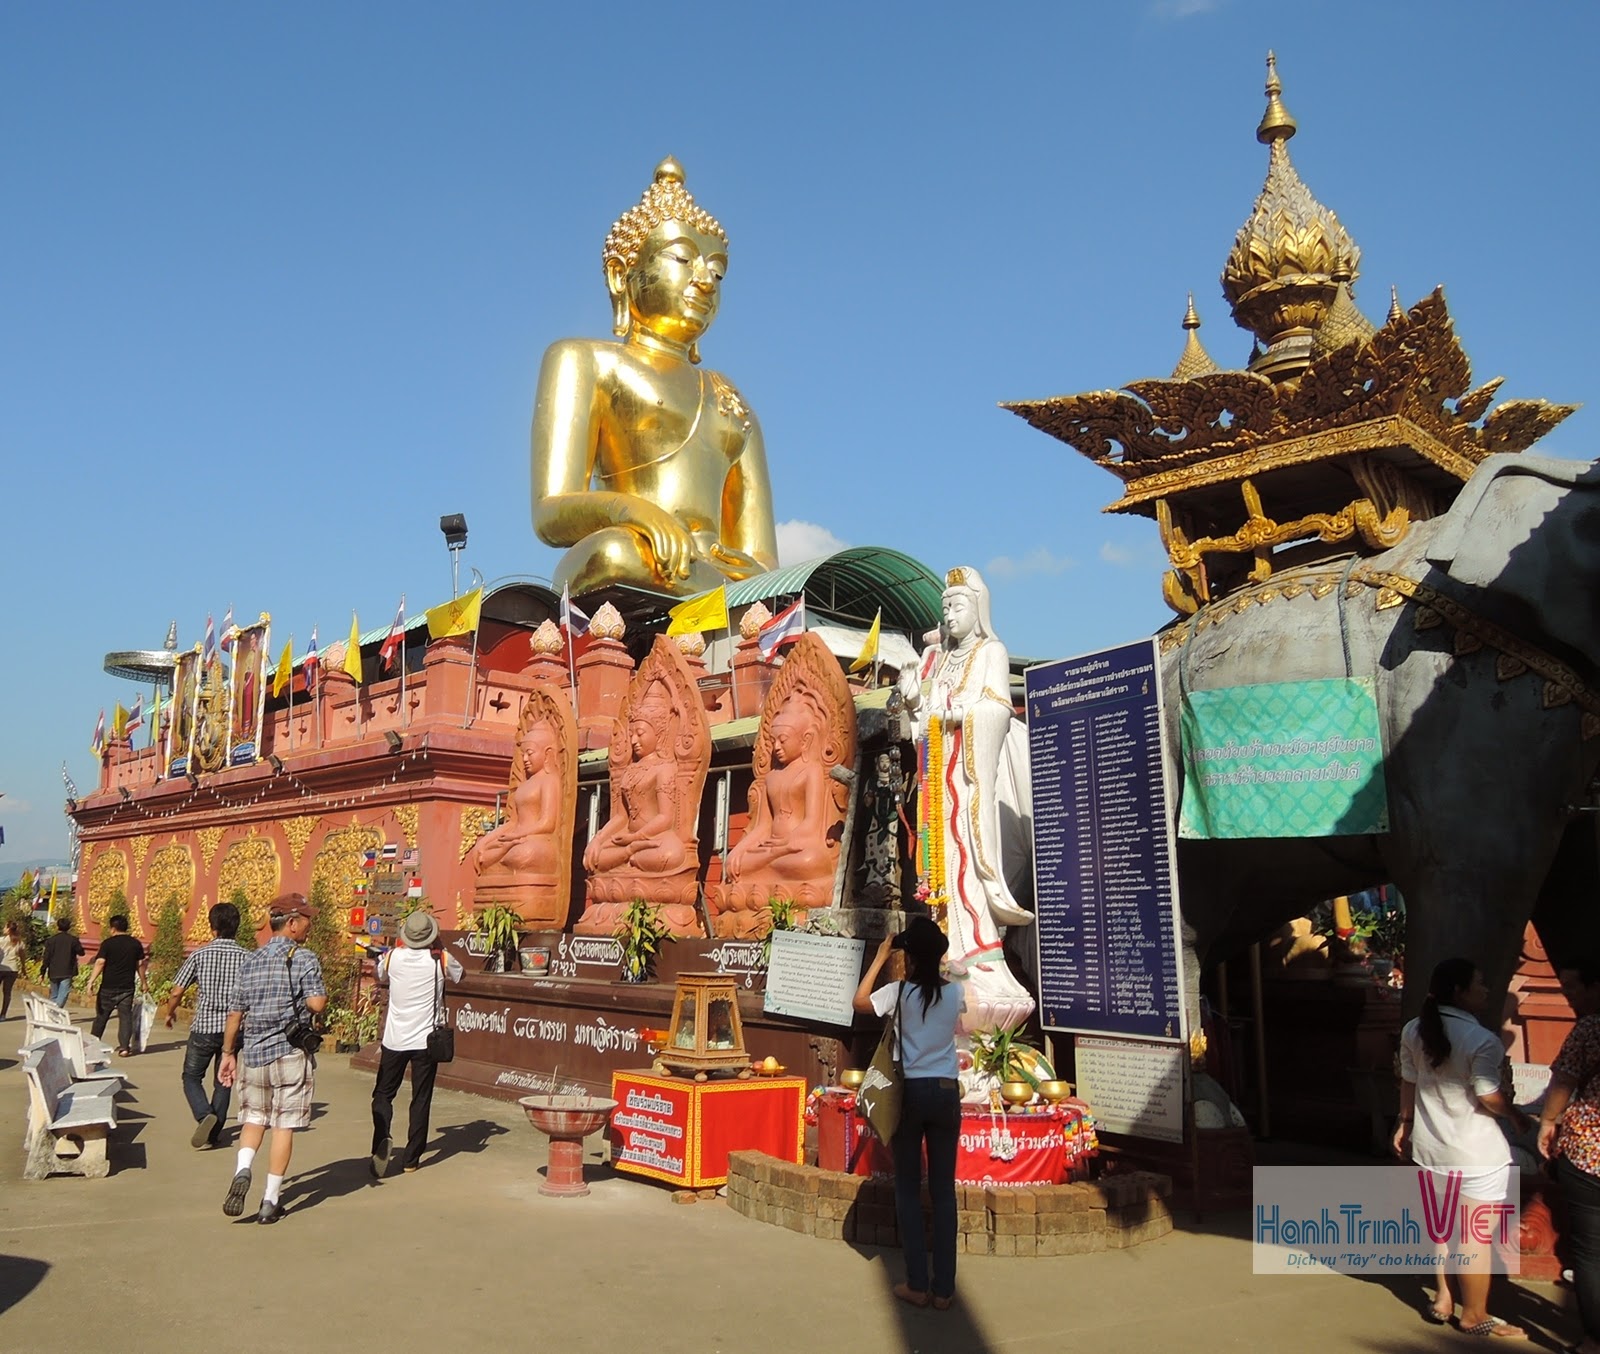 Tham quan chùa bạc Wat Rong Khun ở Chiêng Rai